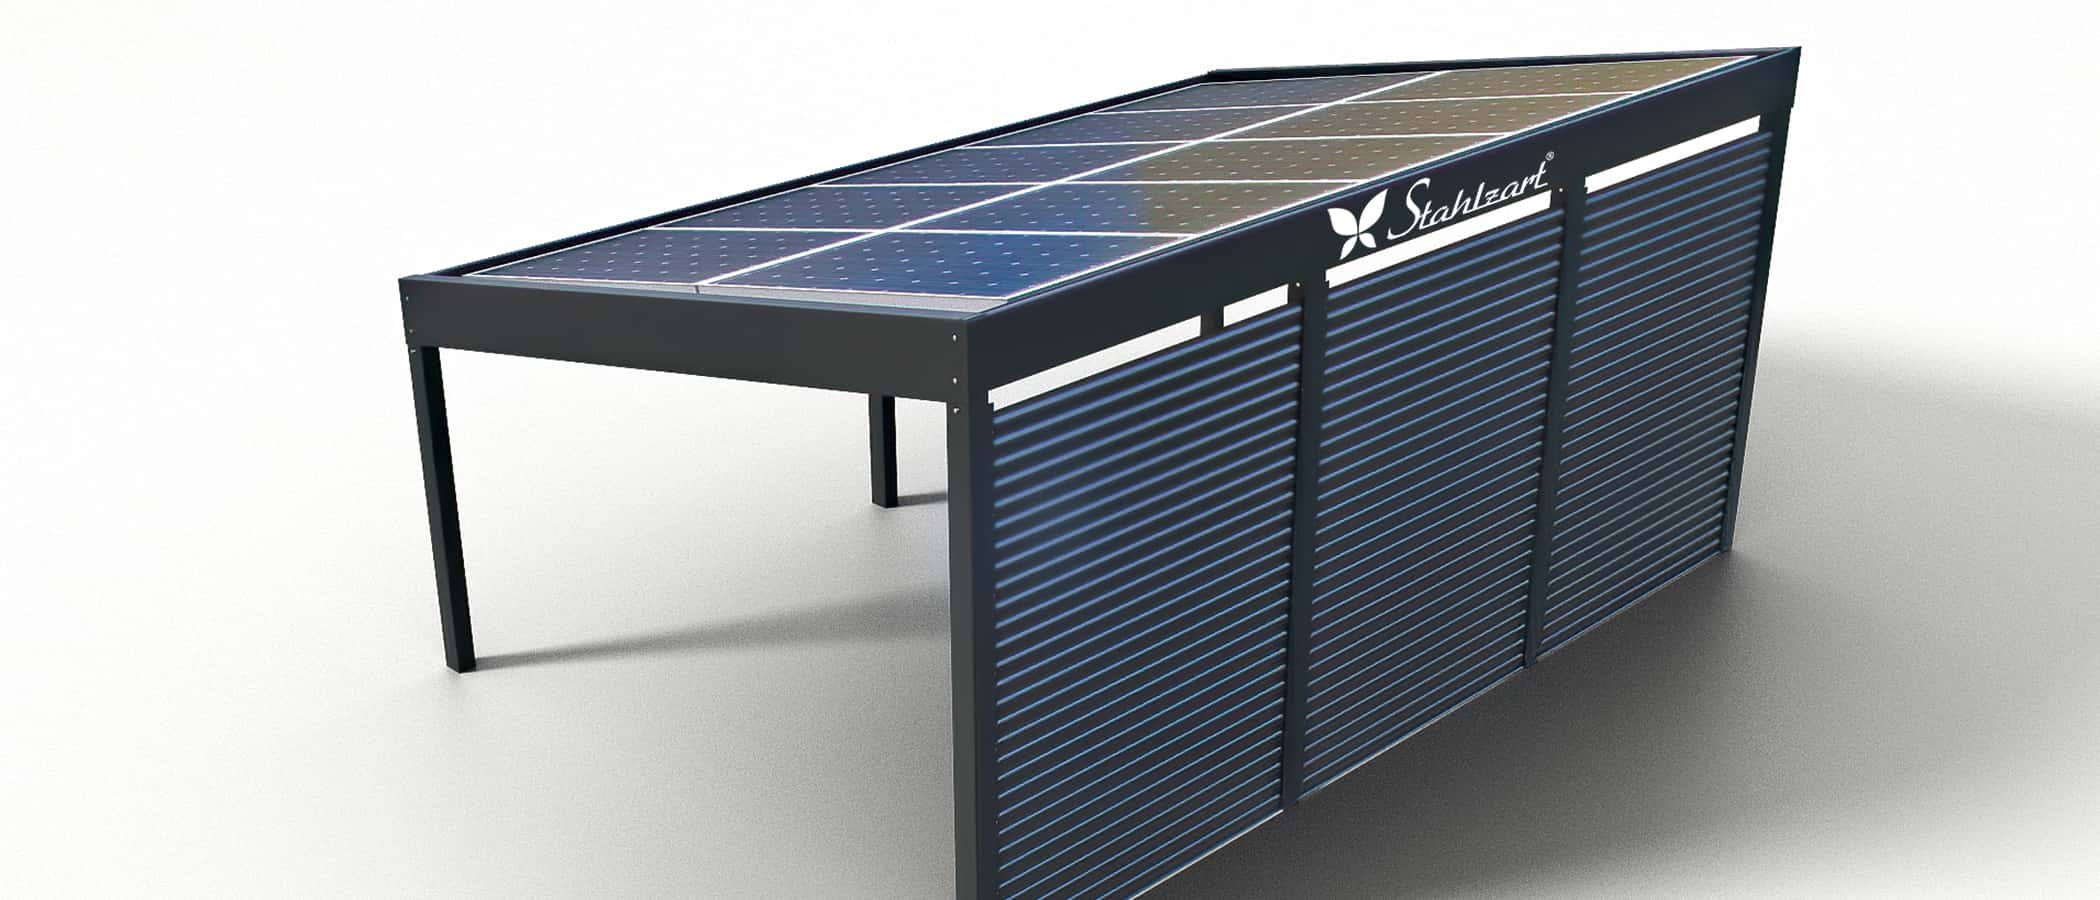 stahlzart-solar-carport-carports-e-fahrzeuge-solaranlage-strom-solarcarport-e-auto-kosten-30-jahre-carportdach-photovoltaik-schraegdach-blech-verkleidung-anthrazit-vorteile-fragen-metall-stahl